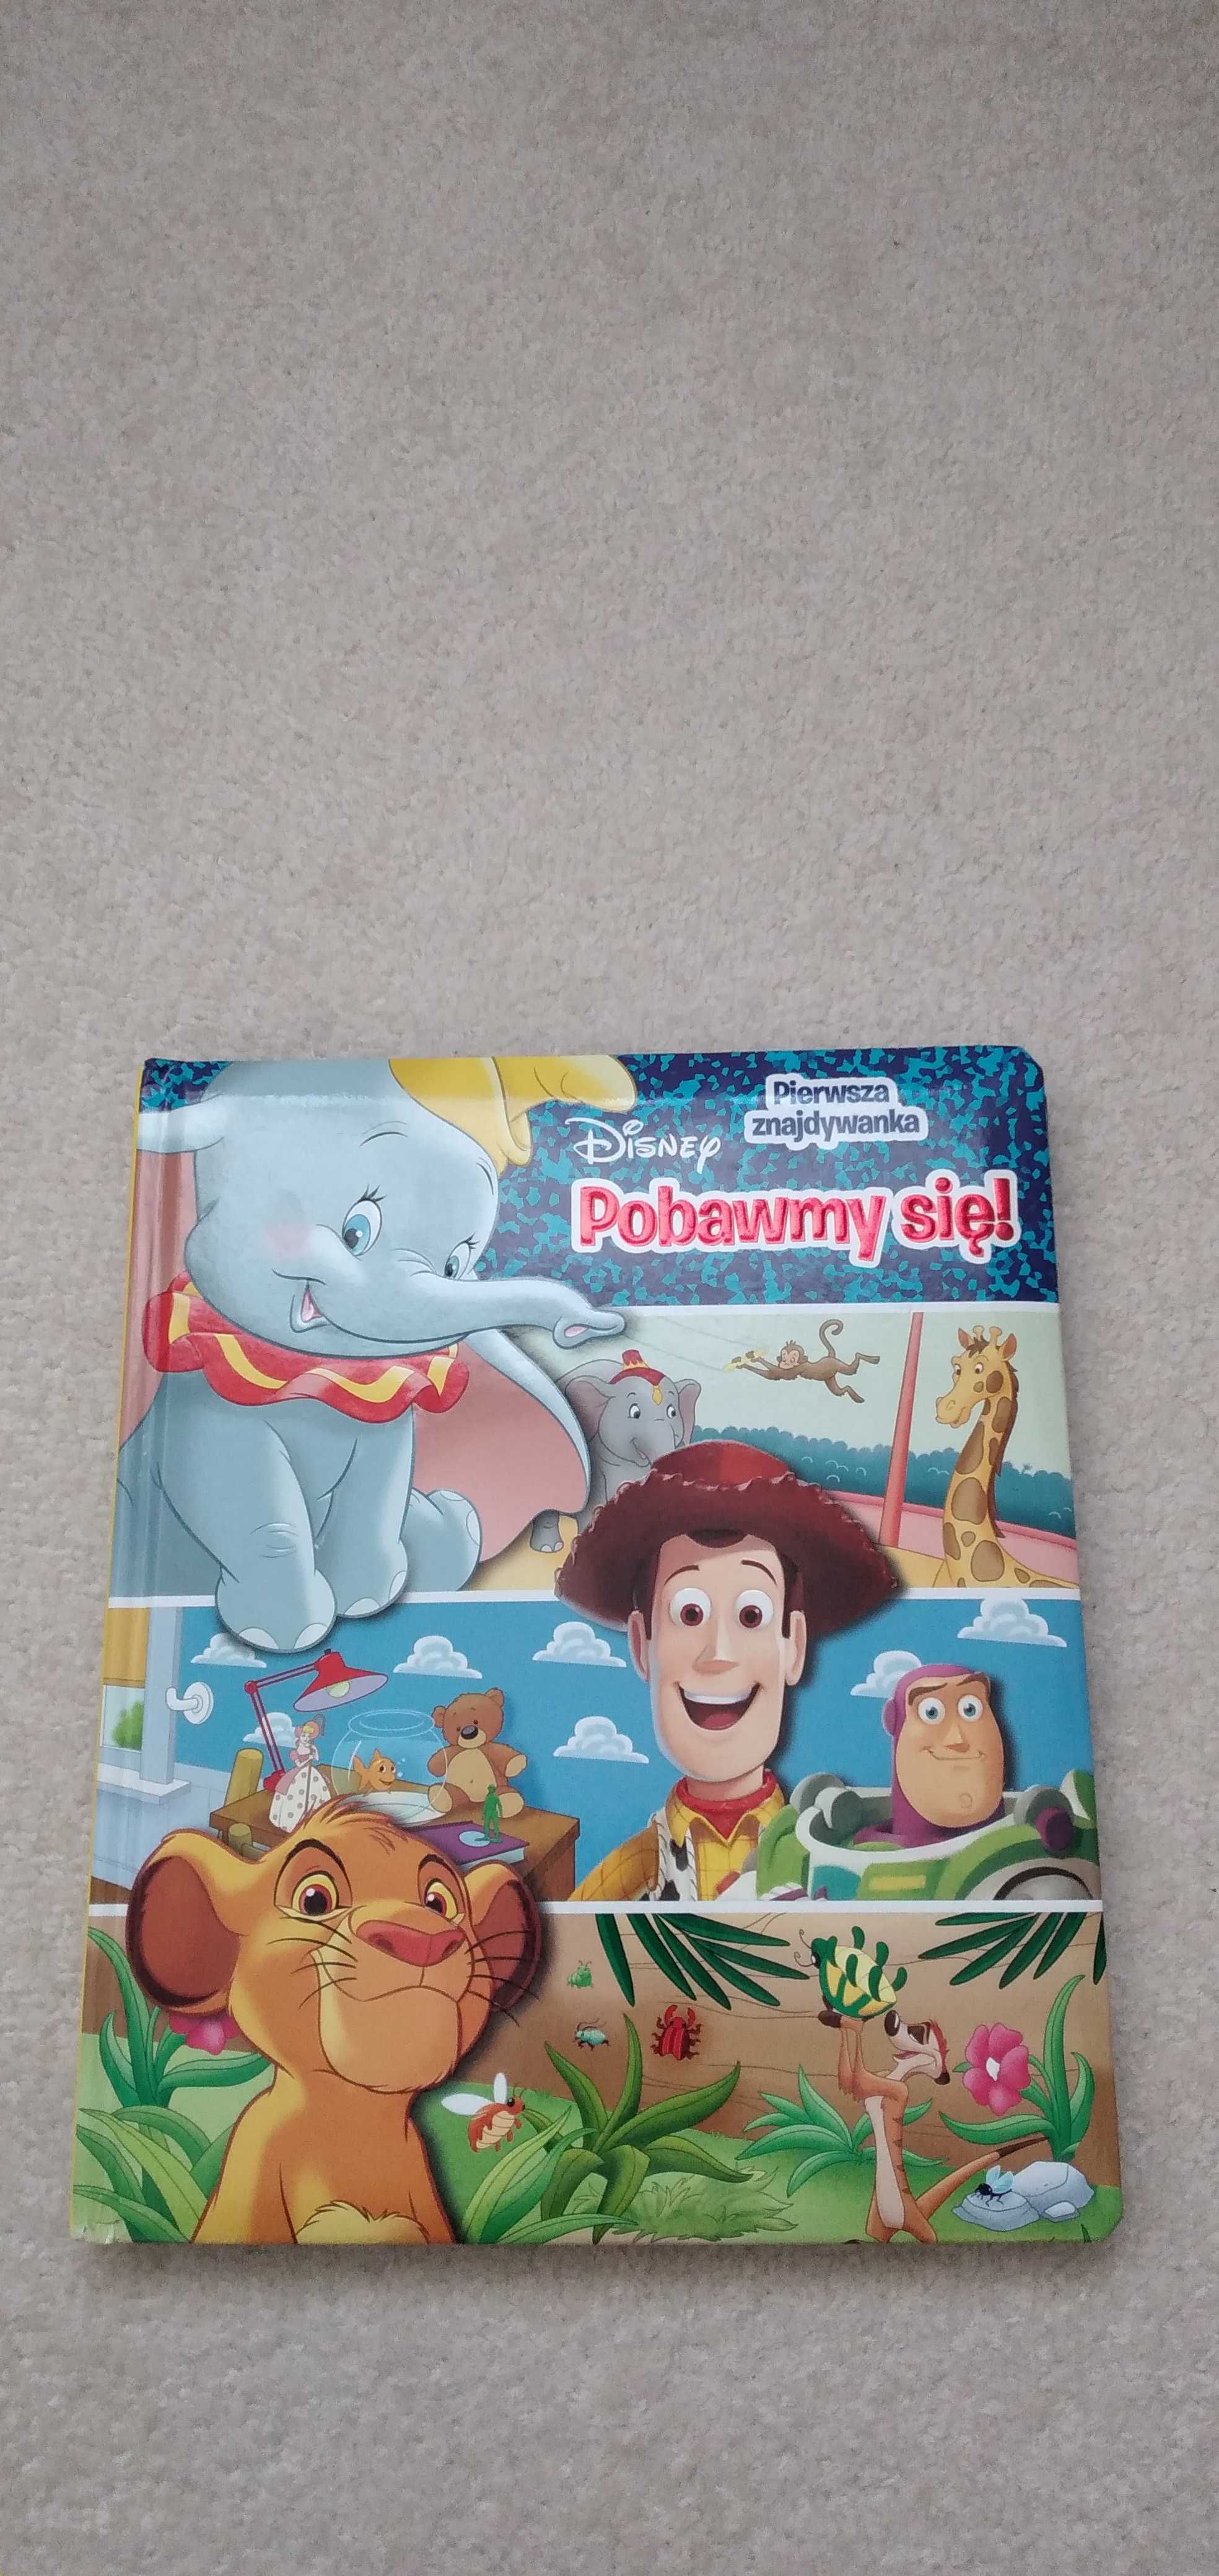 Duża książka Pobawmy się pierwsza znajdywanka, wyszukiwanka Disney